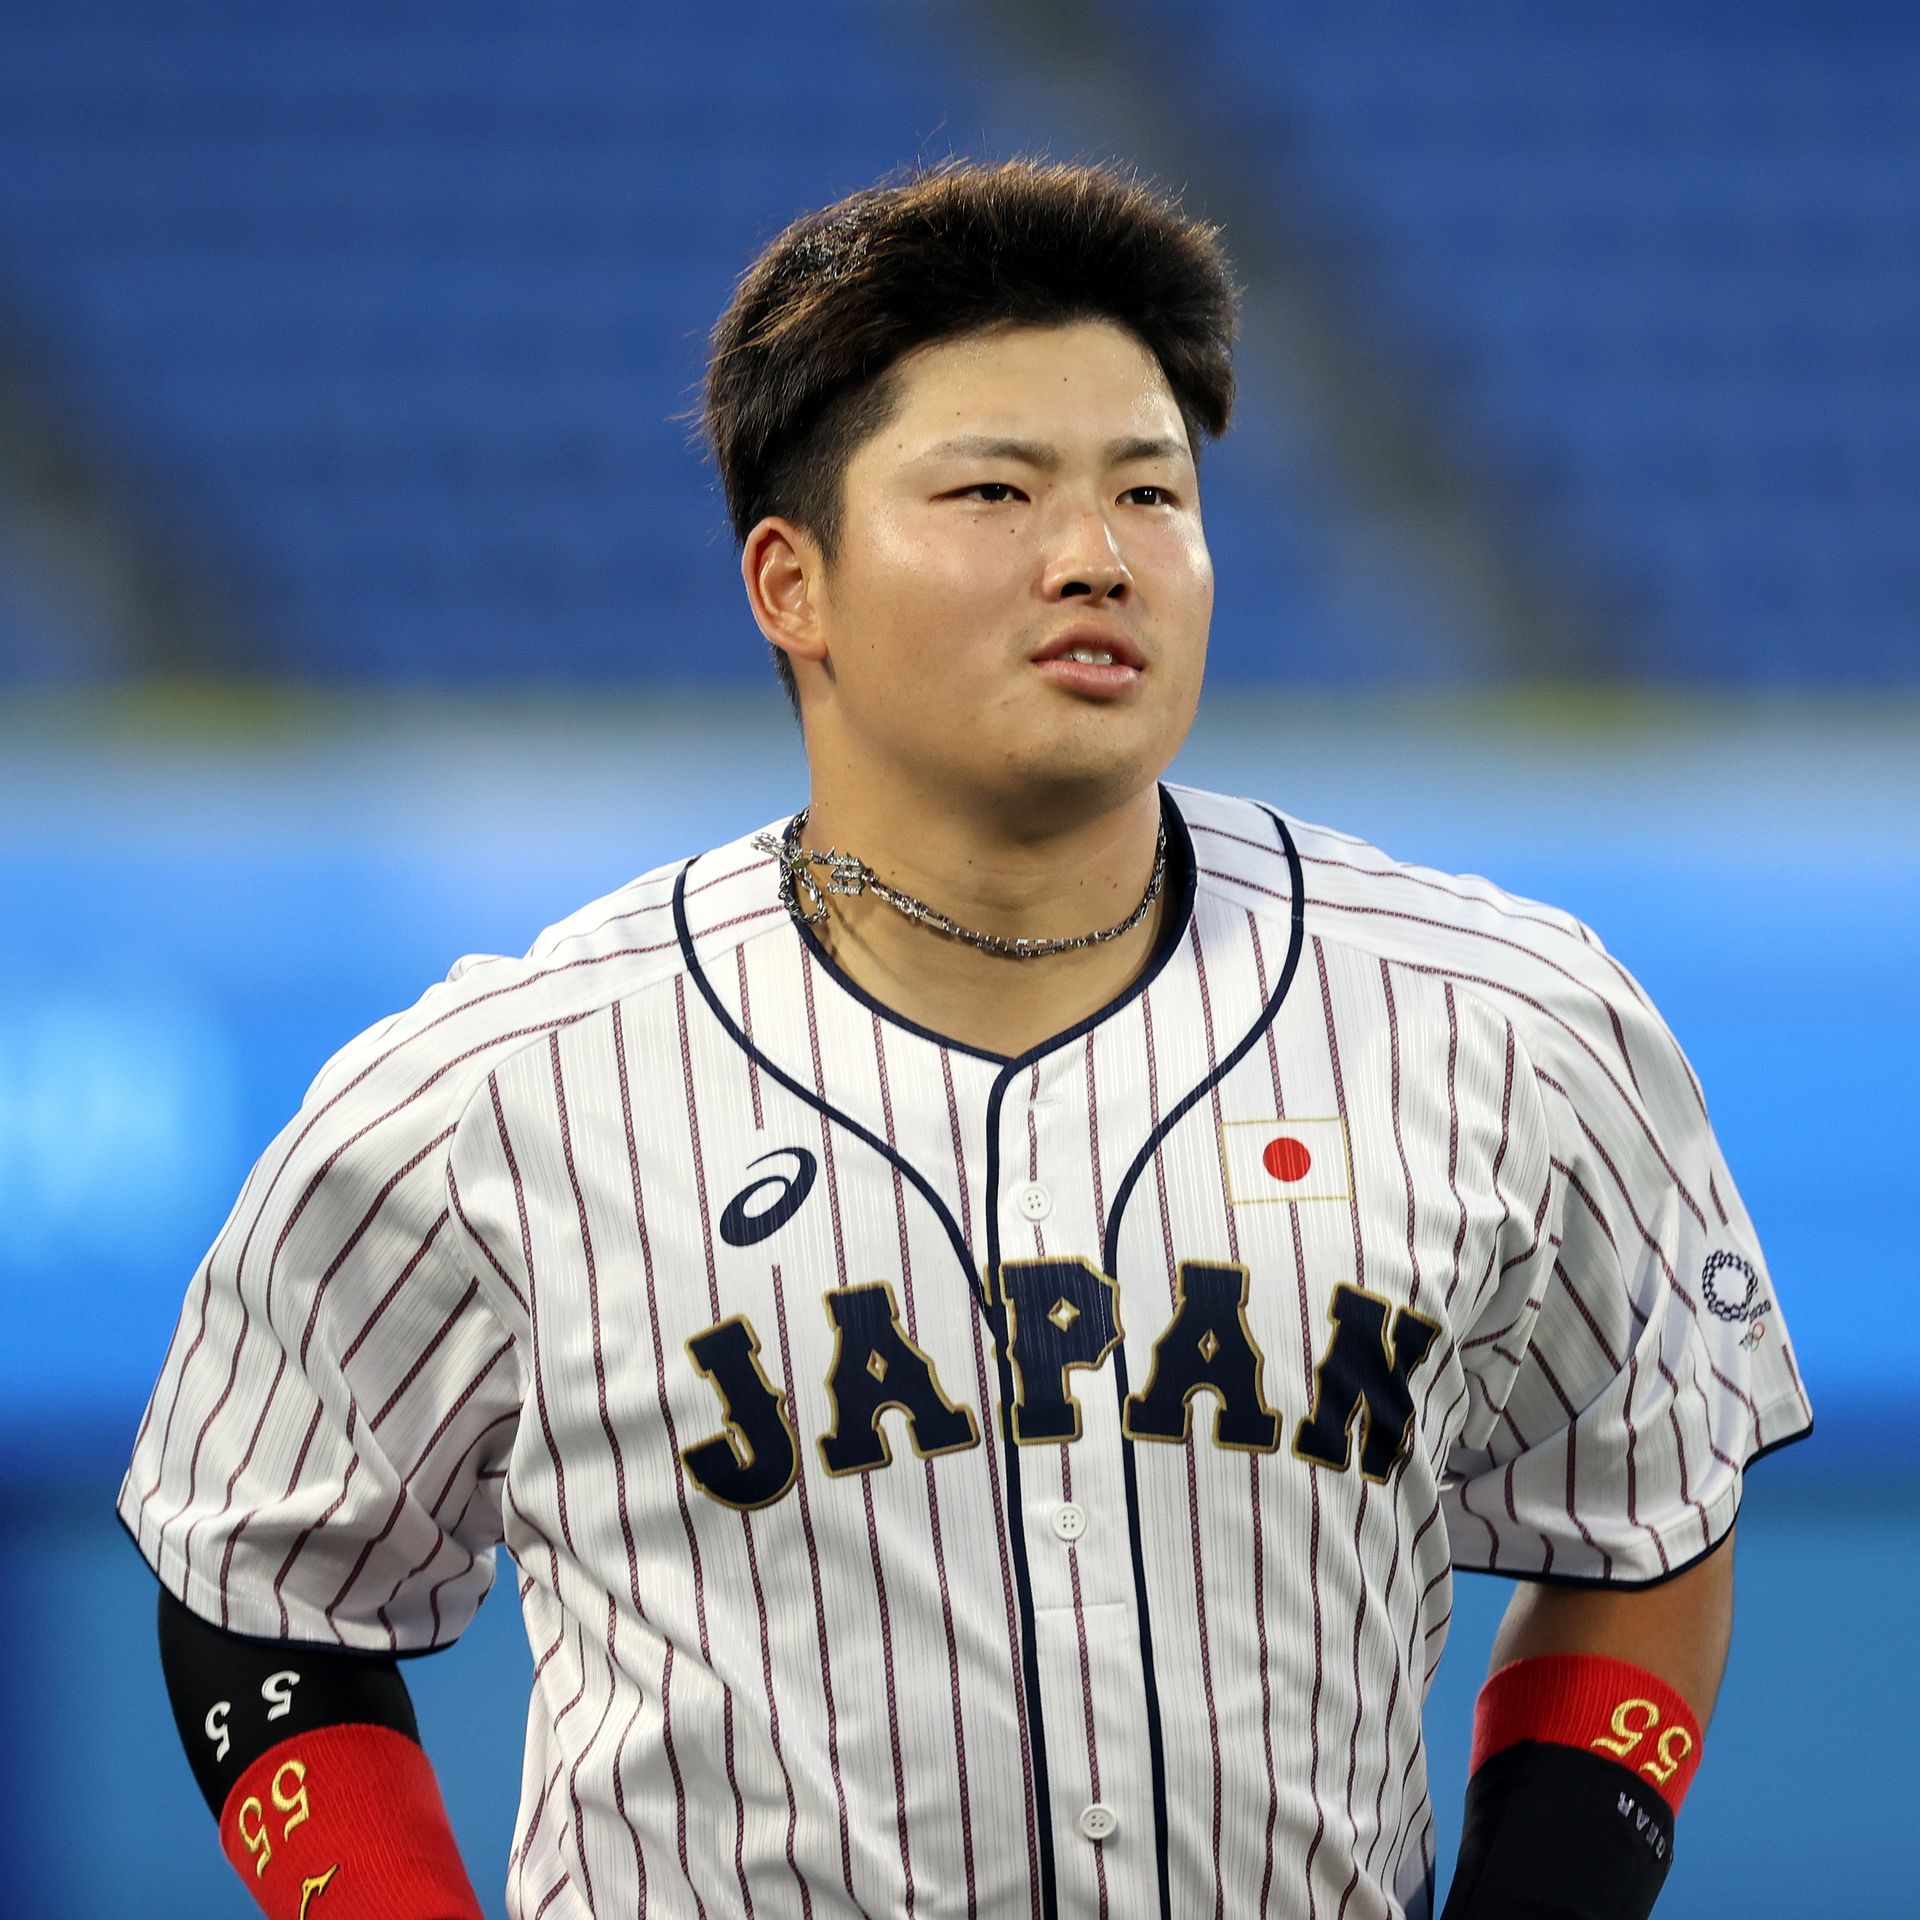 japan baseball player